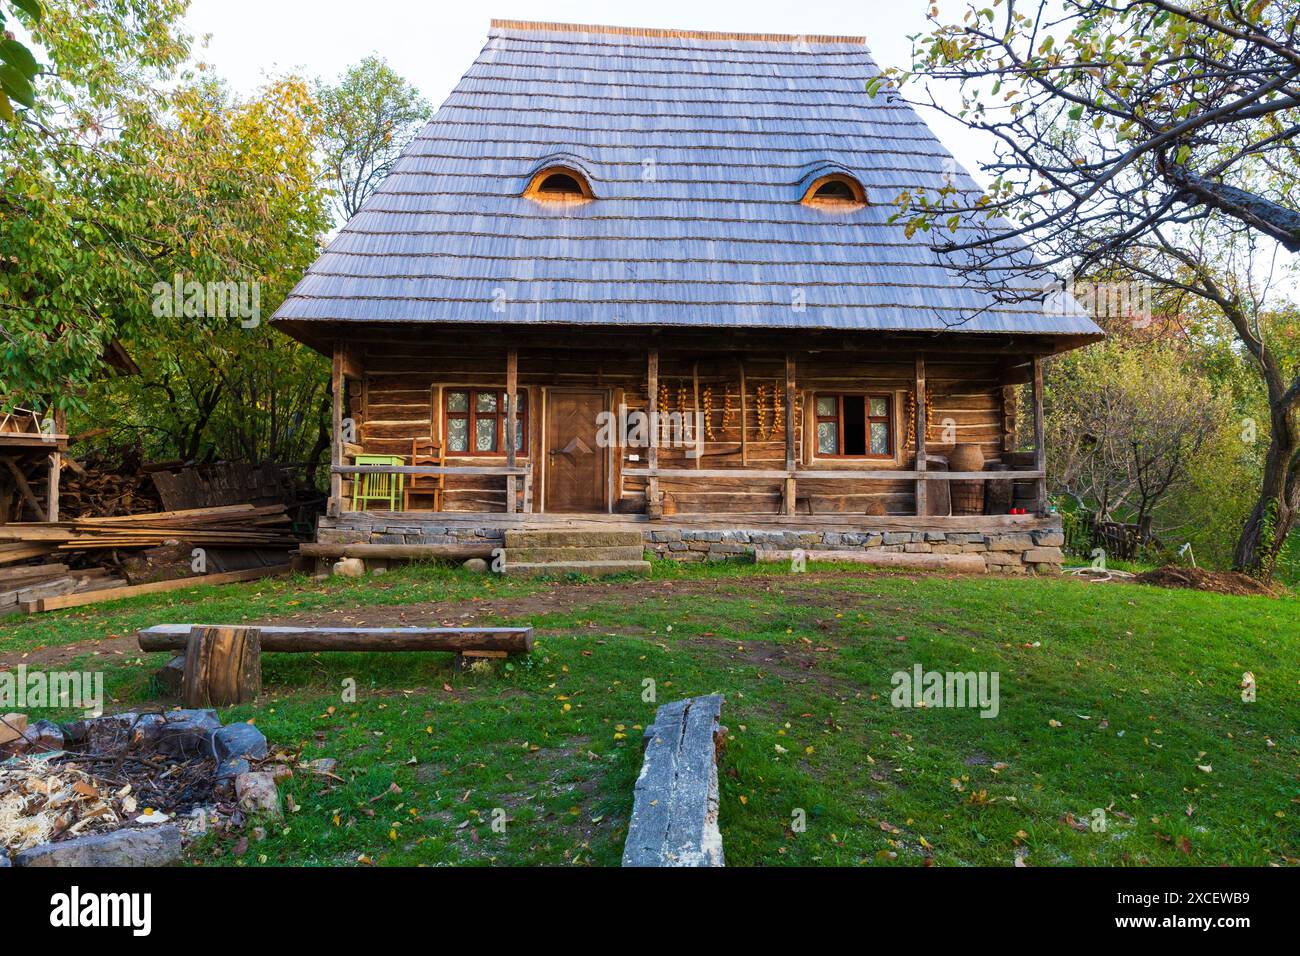 Europa, Rumänien, Siebenbürgen, Maramures, Baie Mare. Traditionelles rumänisches Bauernhaus, Fenstermöbel im Inneren. Stockfoto